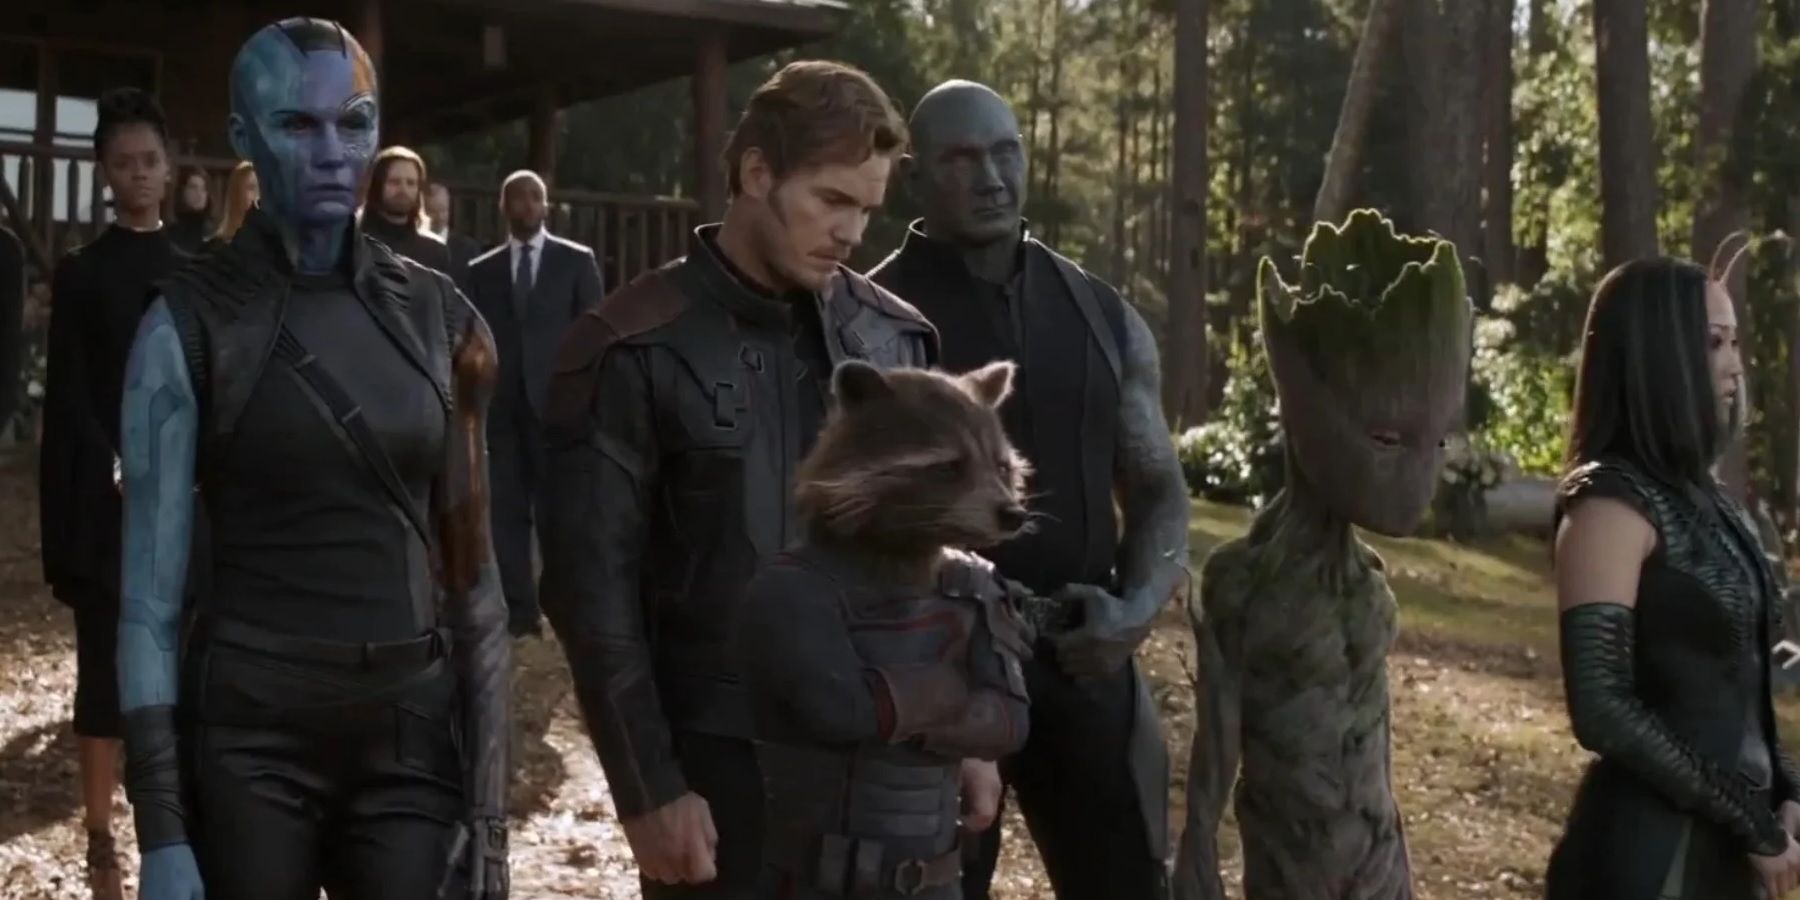 Os Guardiões da Galáxia no funeral de Tony Stark em Avengers Endgame